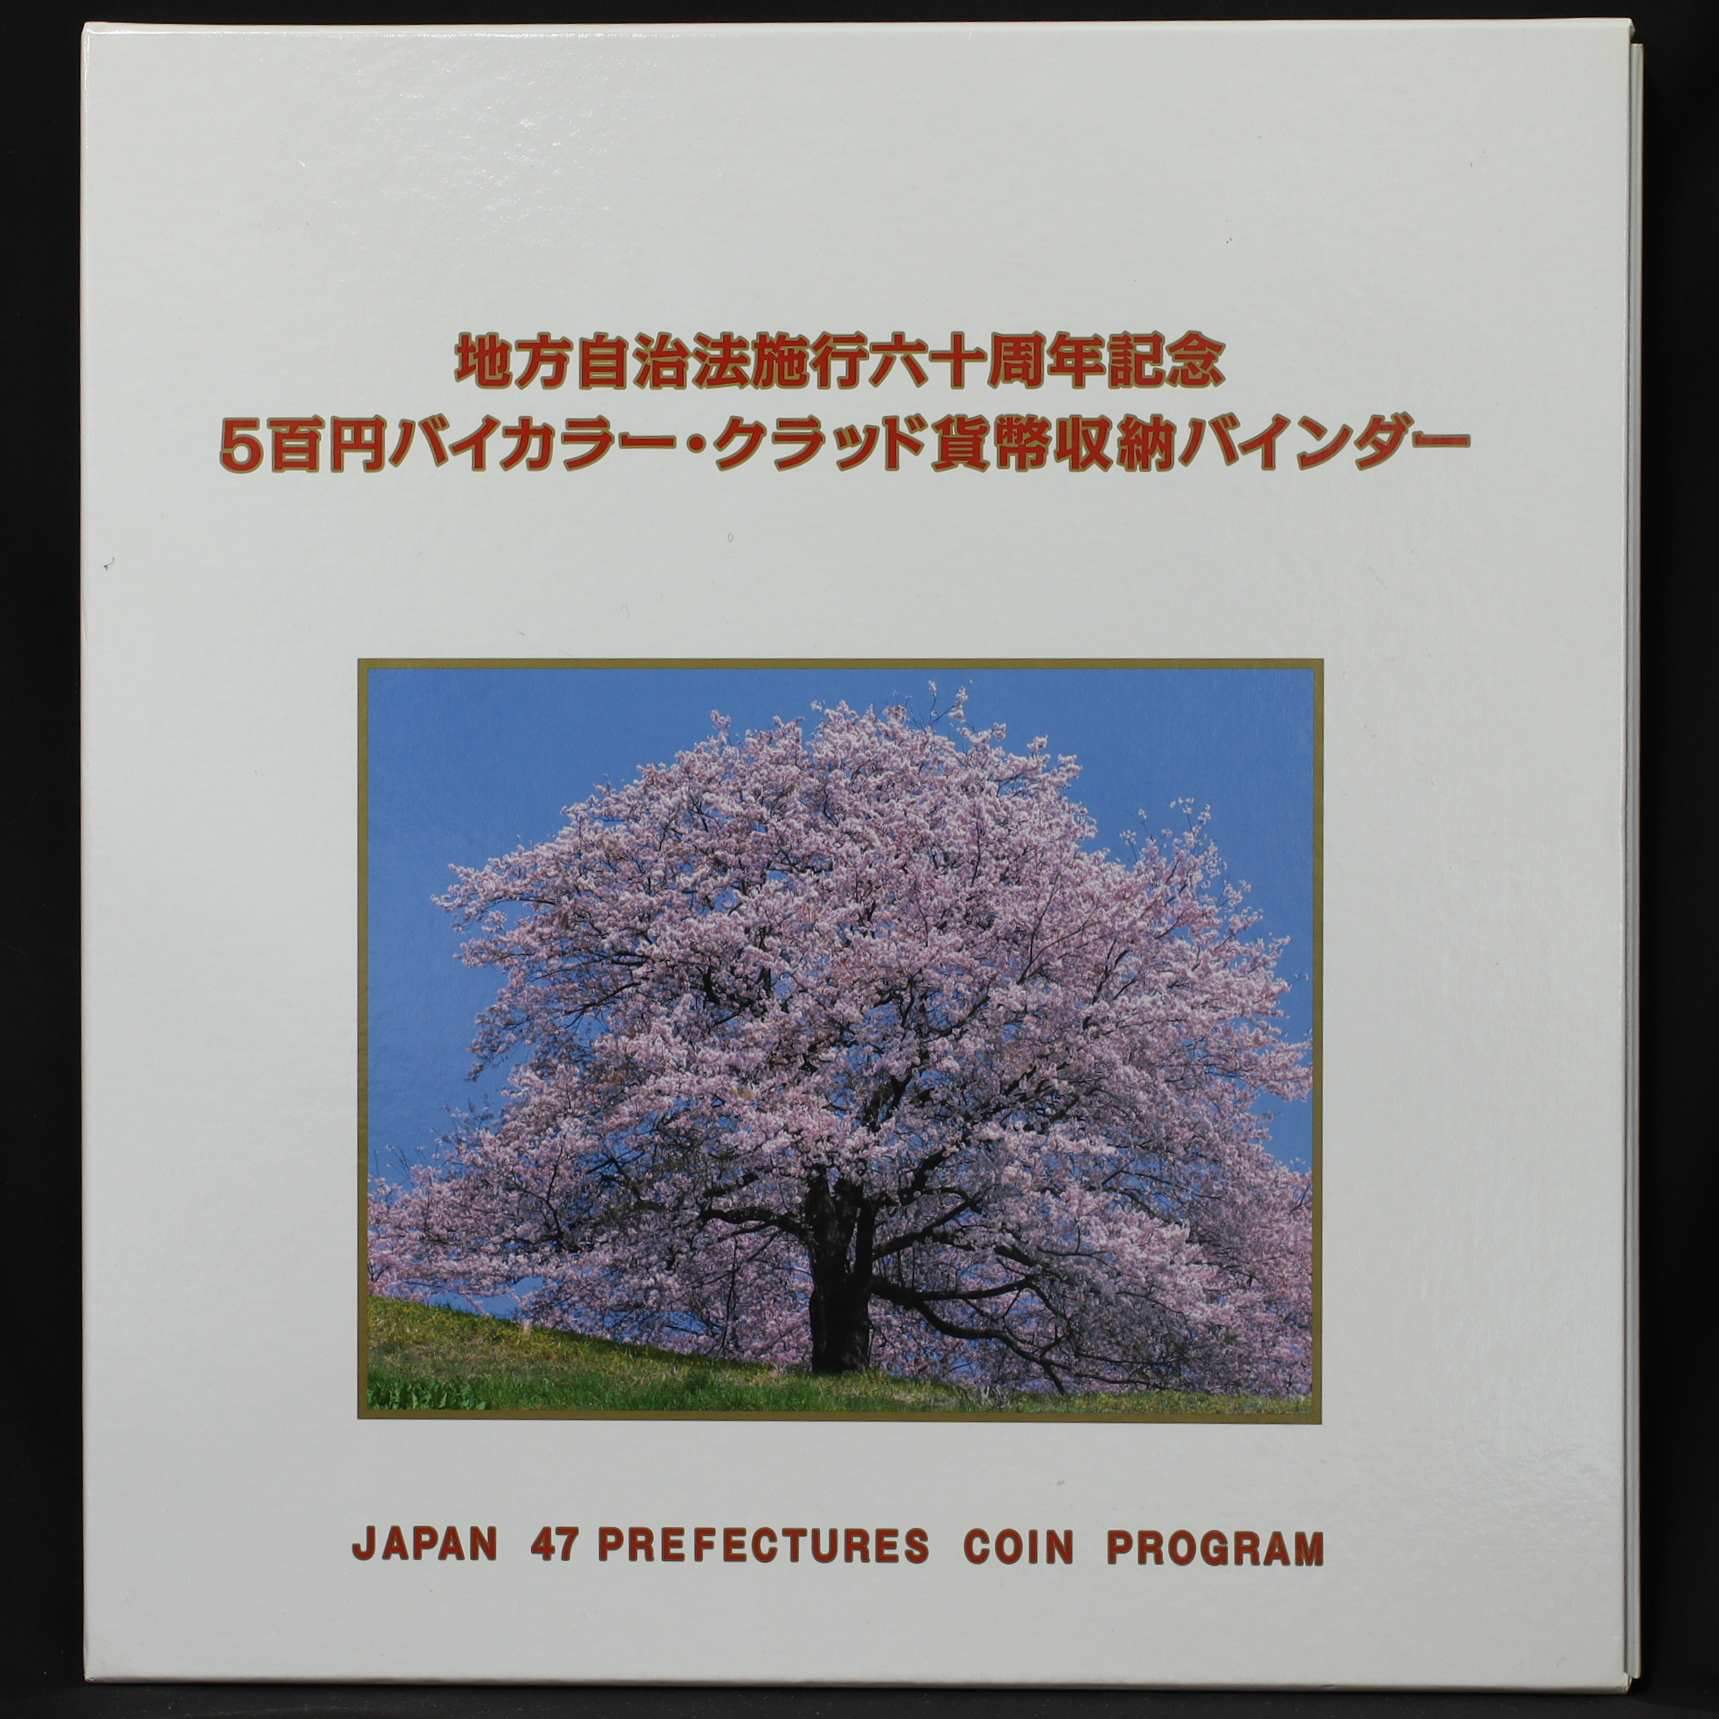 地方自治法施行六十周年記念 47都道府県コンプ バイカラーカード型